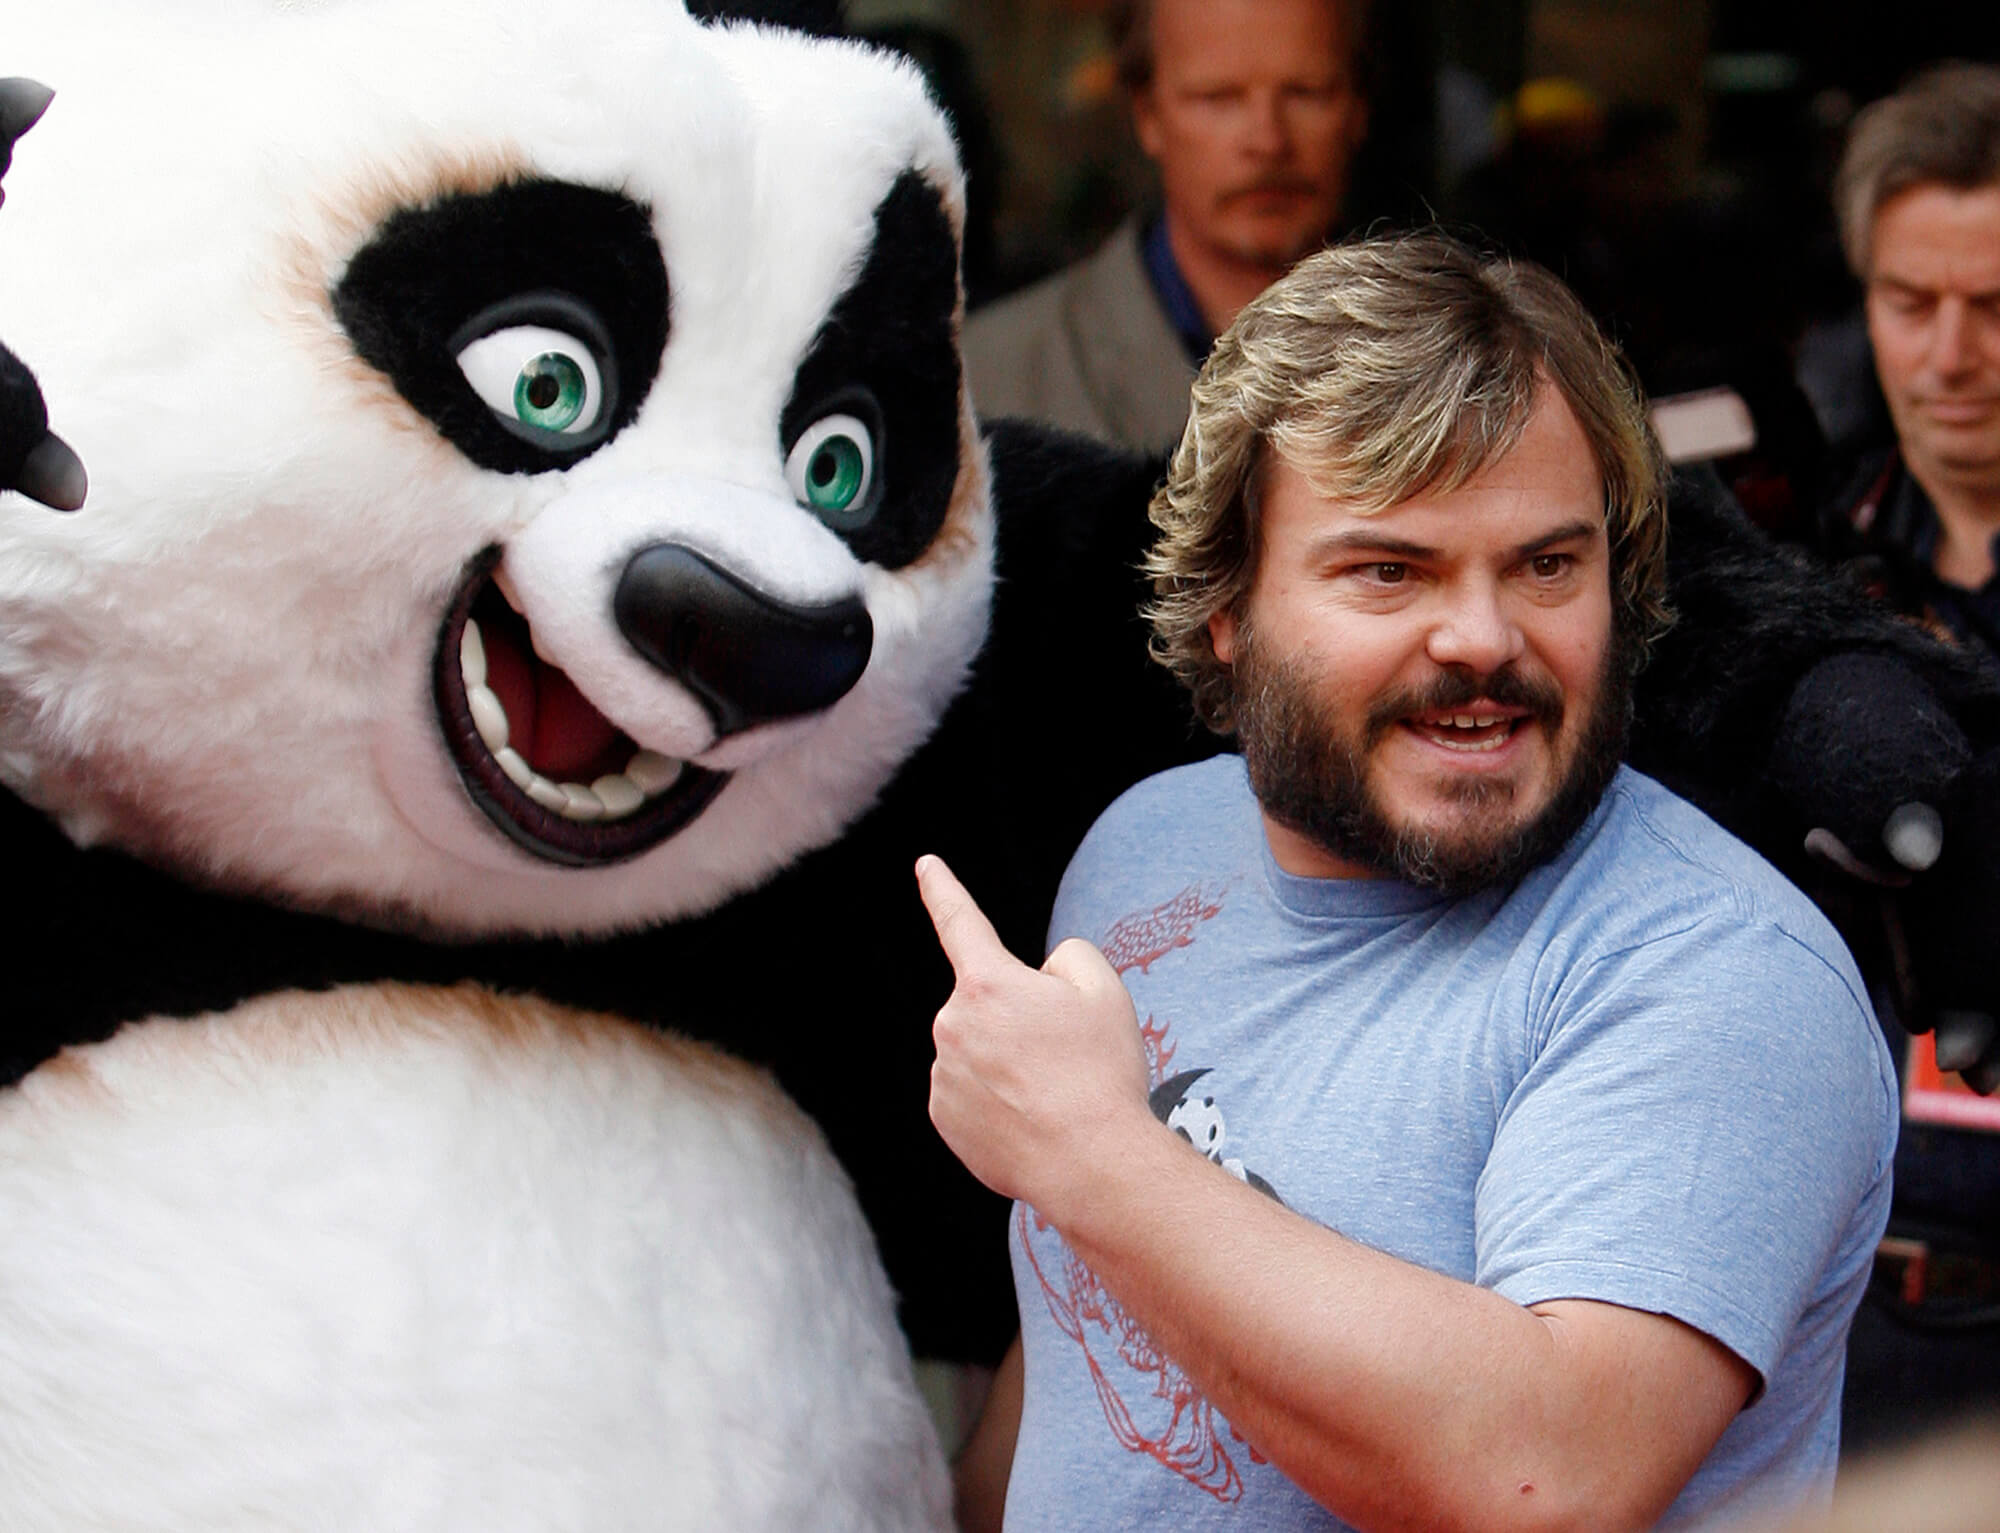 Anledningen till att bråket startade ska ha varit att ett mindre barn skrikit sig igenom hela filmen "Kung Fu Panda 3".